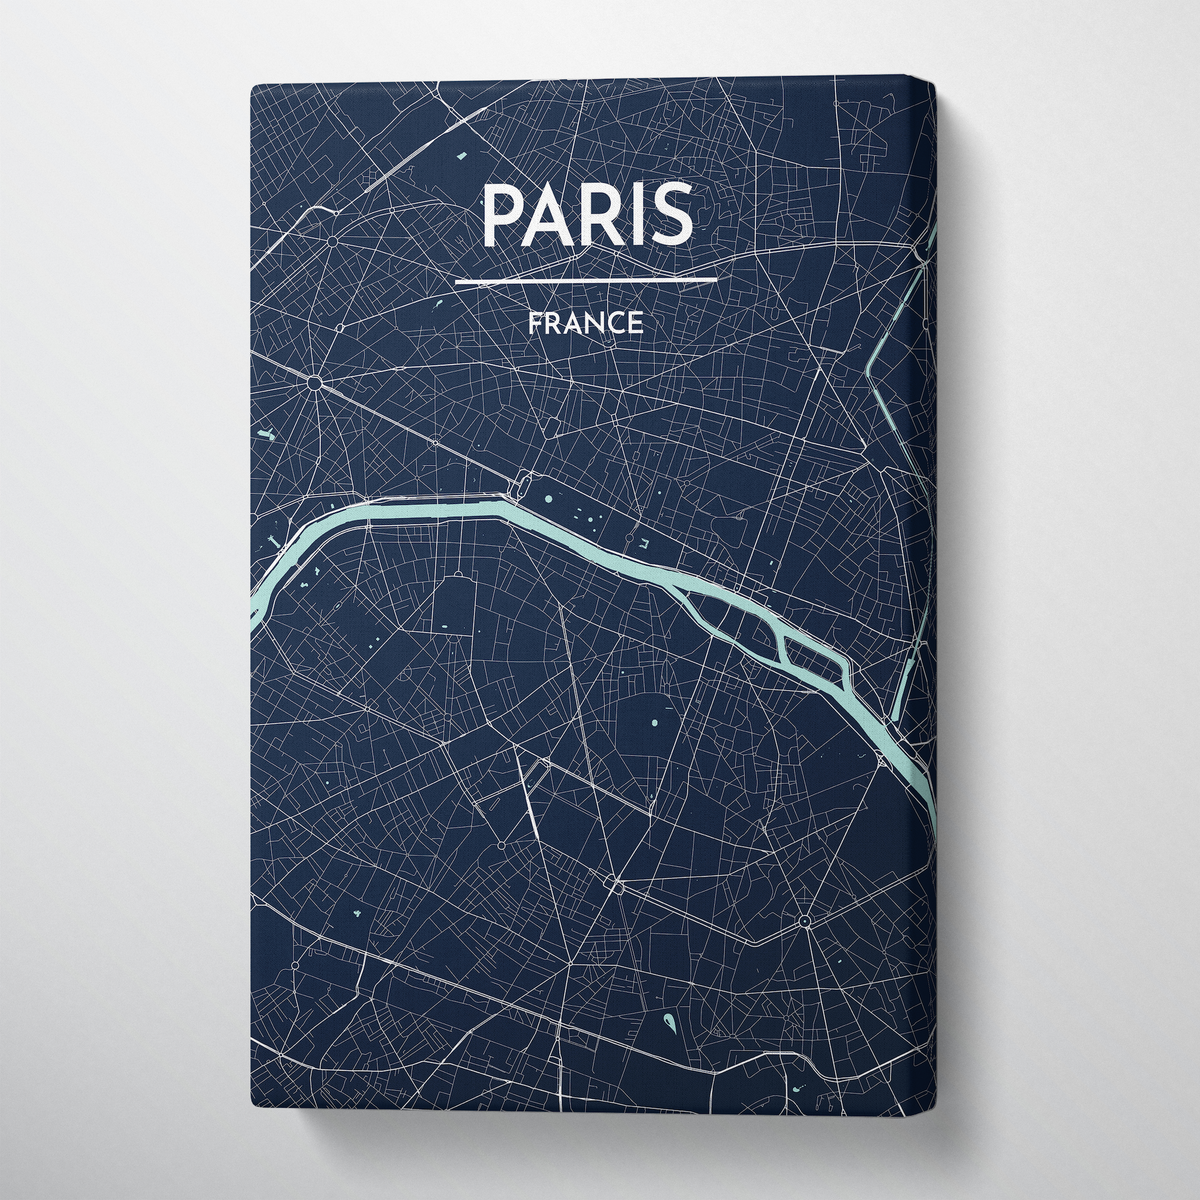 Paris City Map Canvas Wrap - Point Two Design